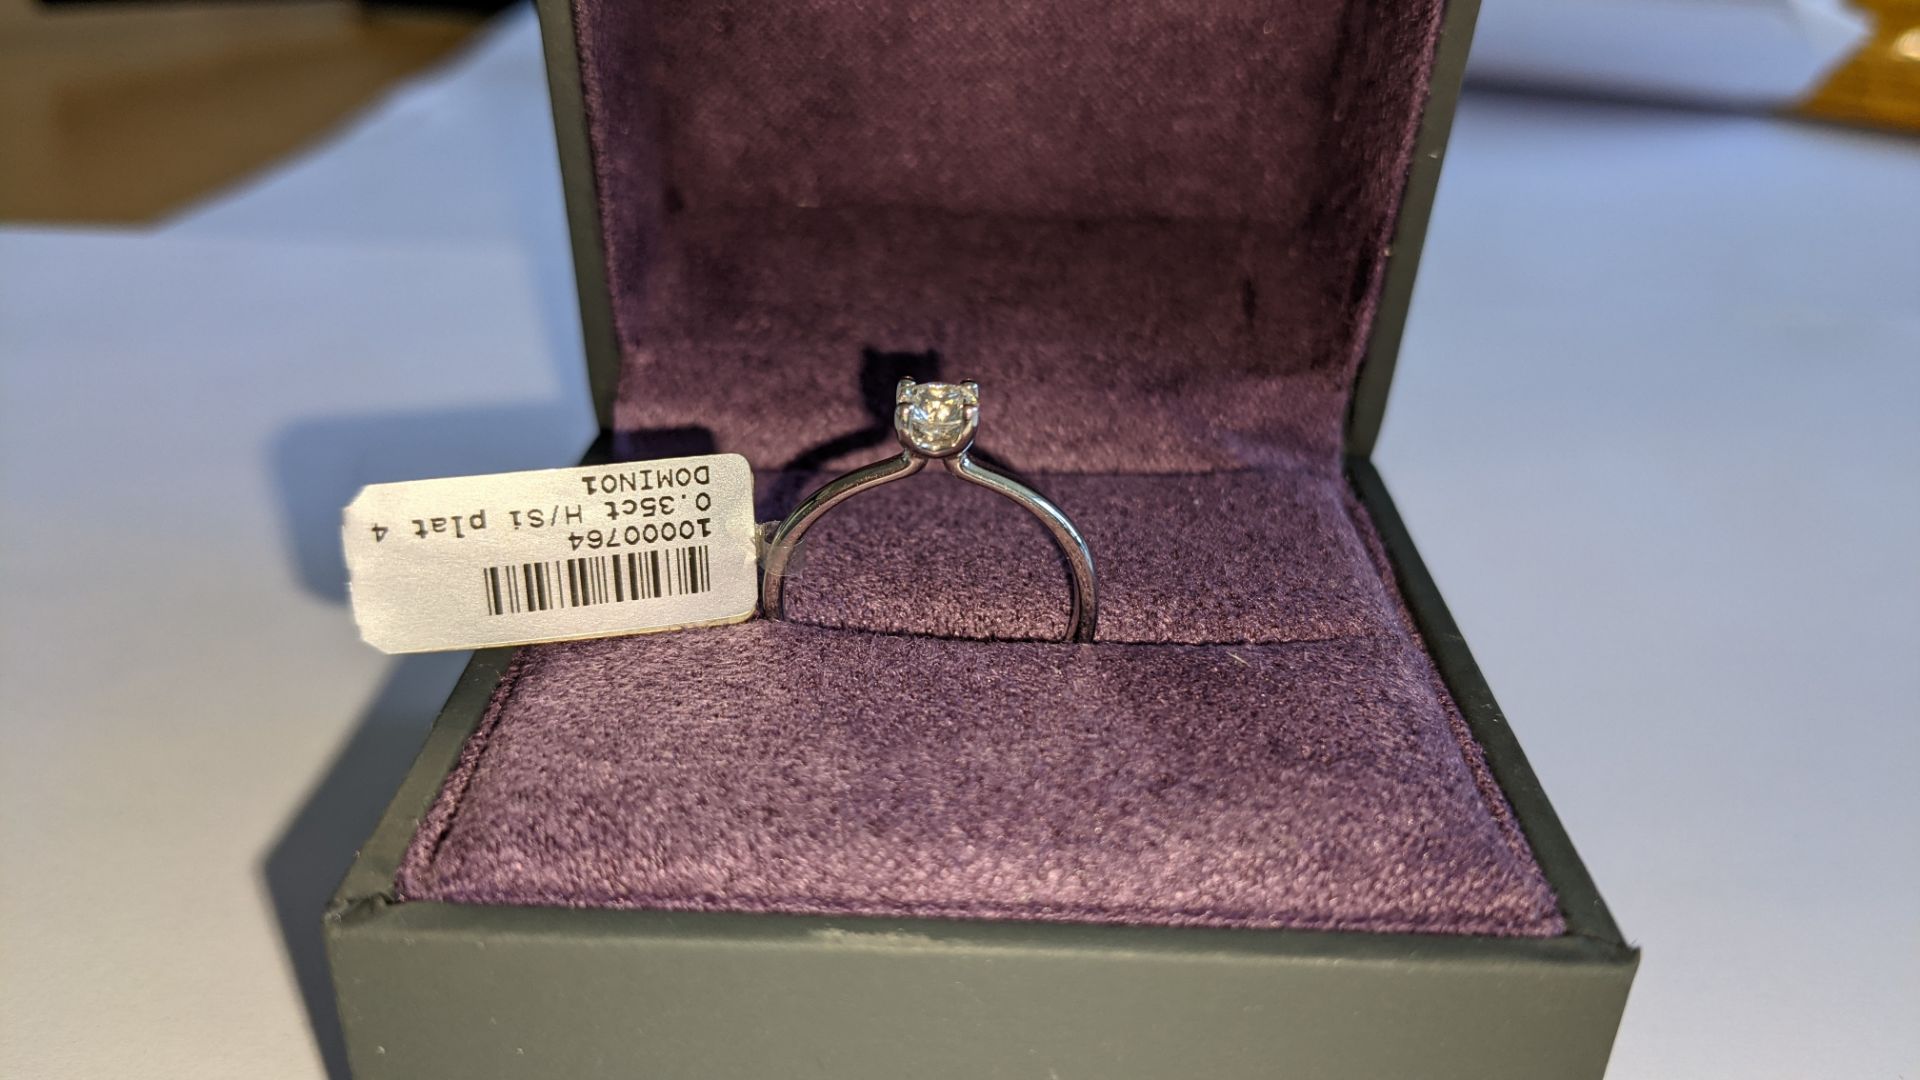 Single stone diamond & platinum 950 ring with 0.35ct H/Si diamond, RRP £1,507 - Image 3 of 29